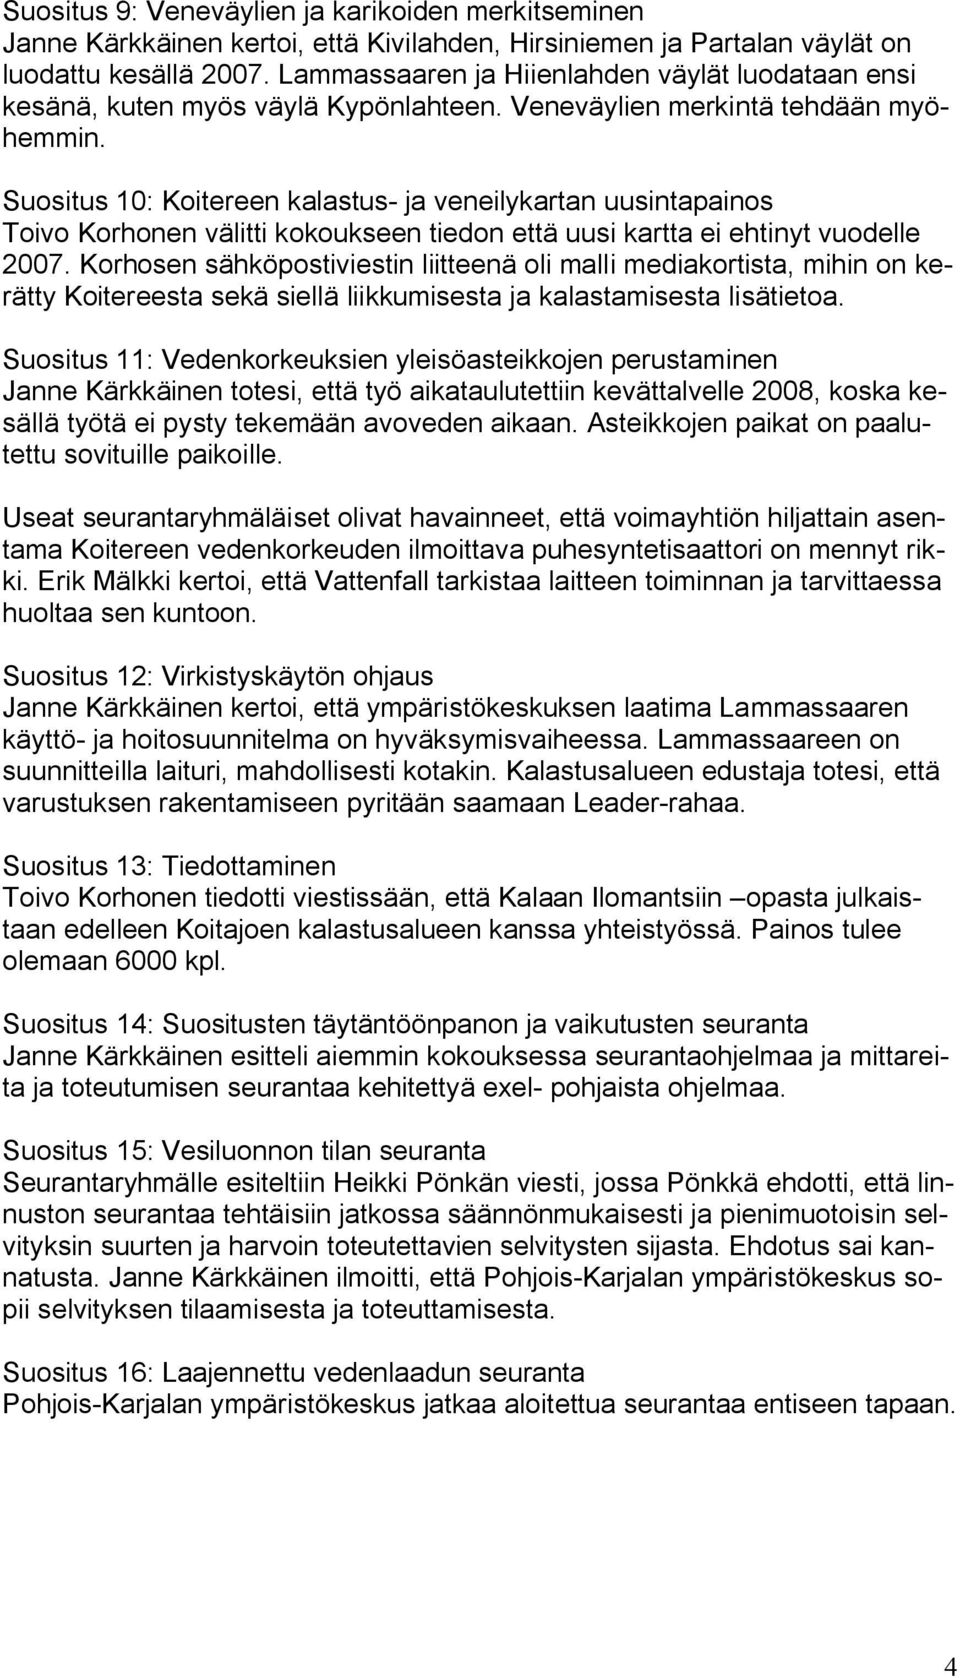 Suositus 10: Koitereen kalastus ja veneilykartan uusintapainos Toivo Korhonen välitti kokoukseen tiedon että uusi kartta ei ehtinyt vuodelle 2007.